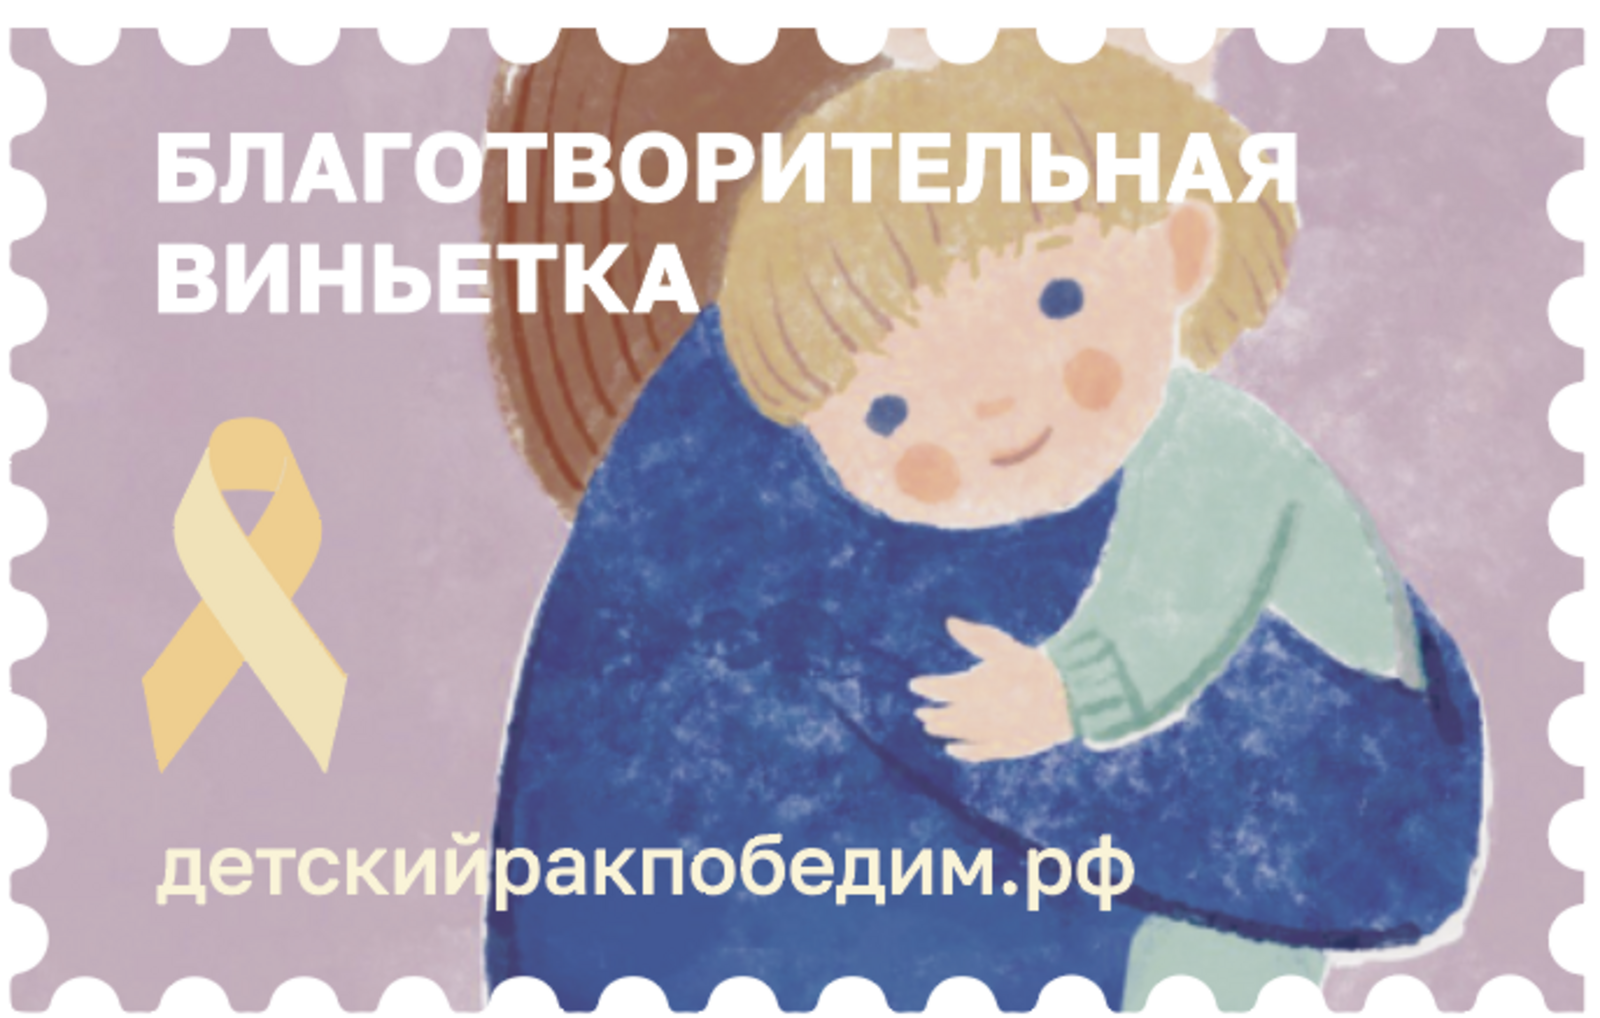 Жители Башкирии могут помочь онкобольным детям